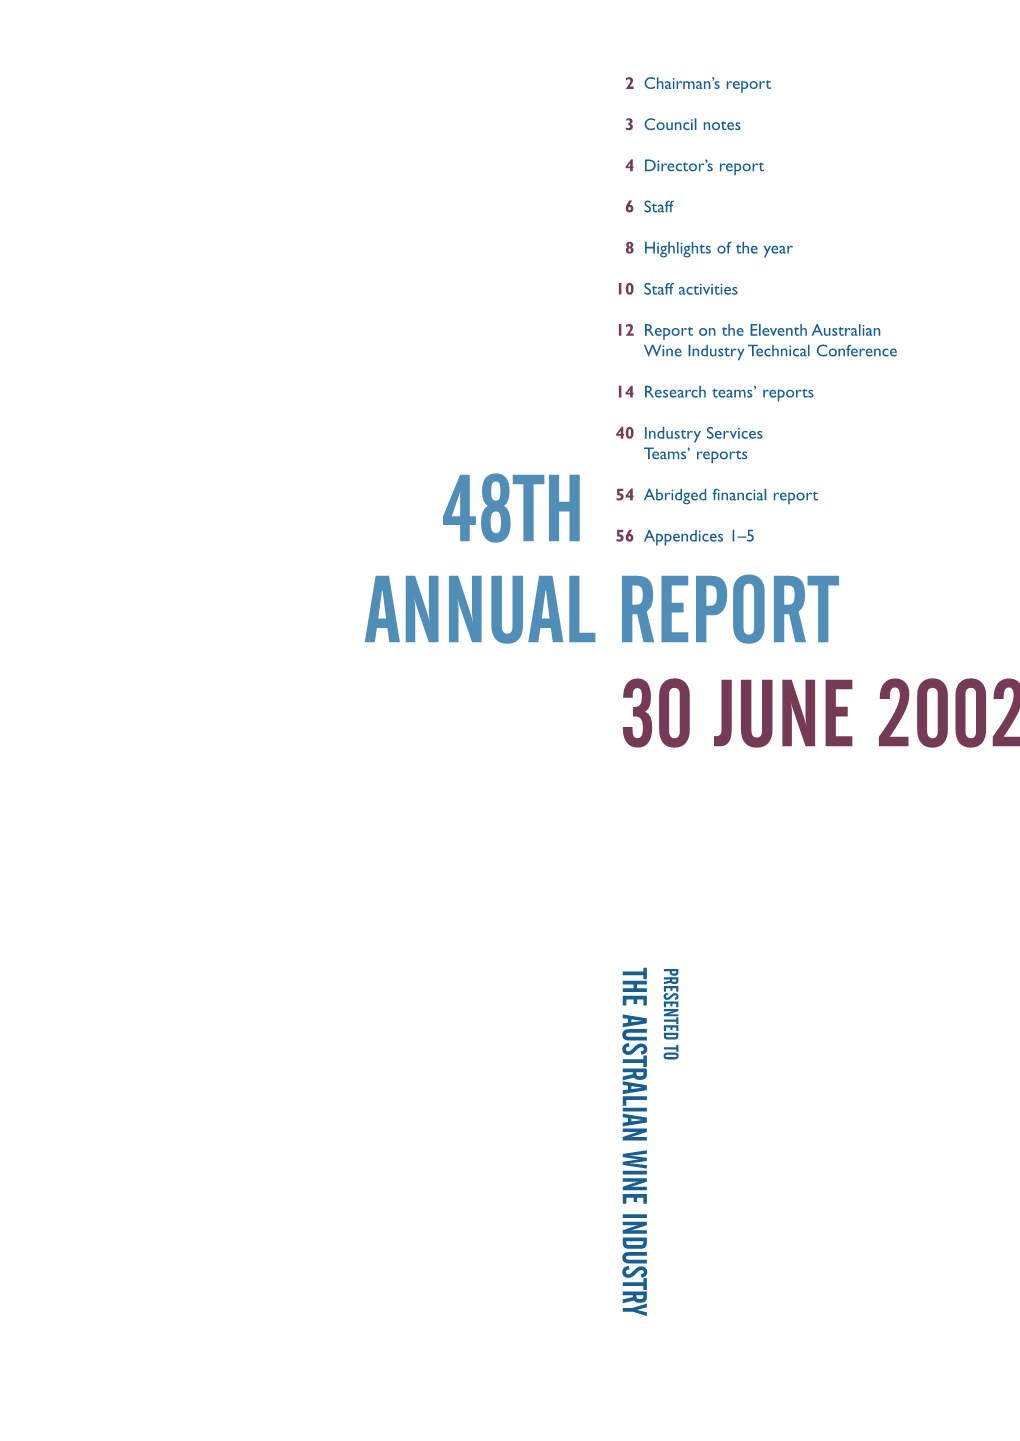 Annual Report 48Th 30 June 2002